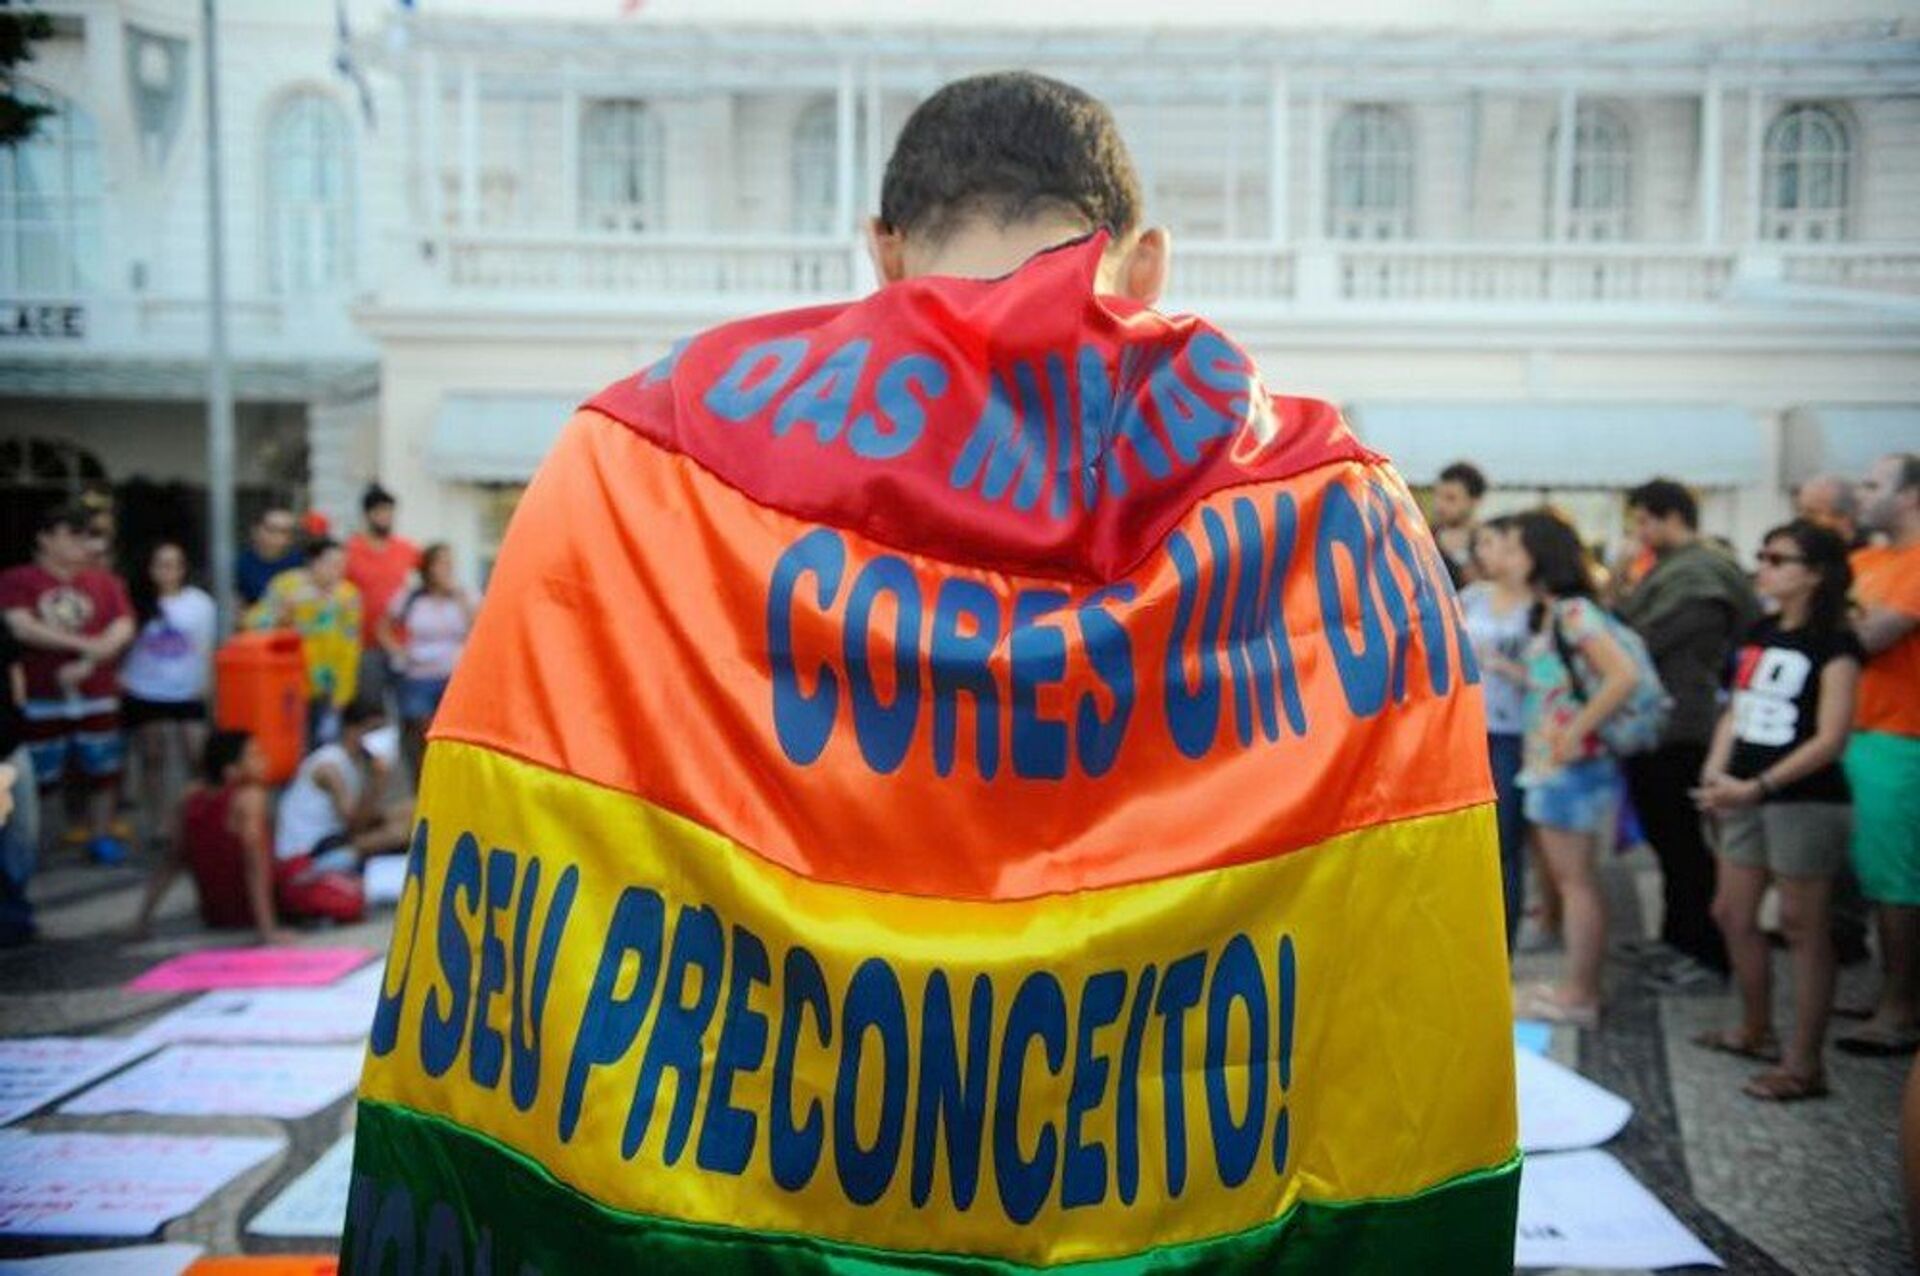 No Dia Internacional Contra a Homofobia ativista diz: 'No Brasil, temos muito a comemorar' - Sputnik Brasil, 1920, 17.05.2021